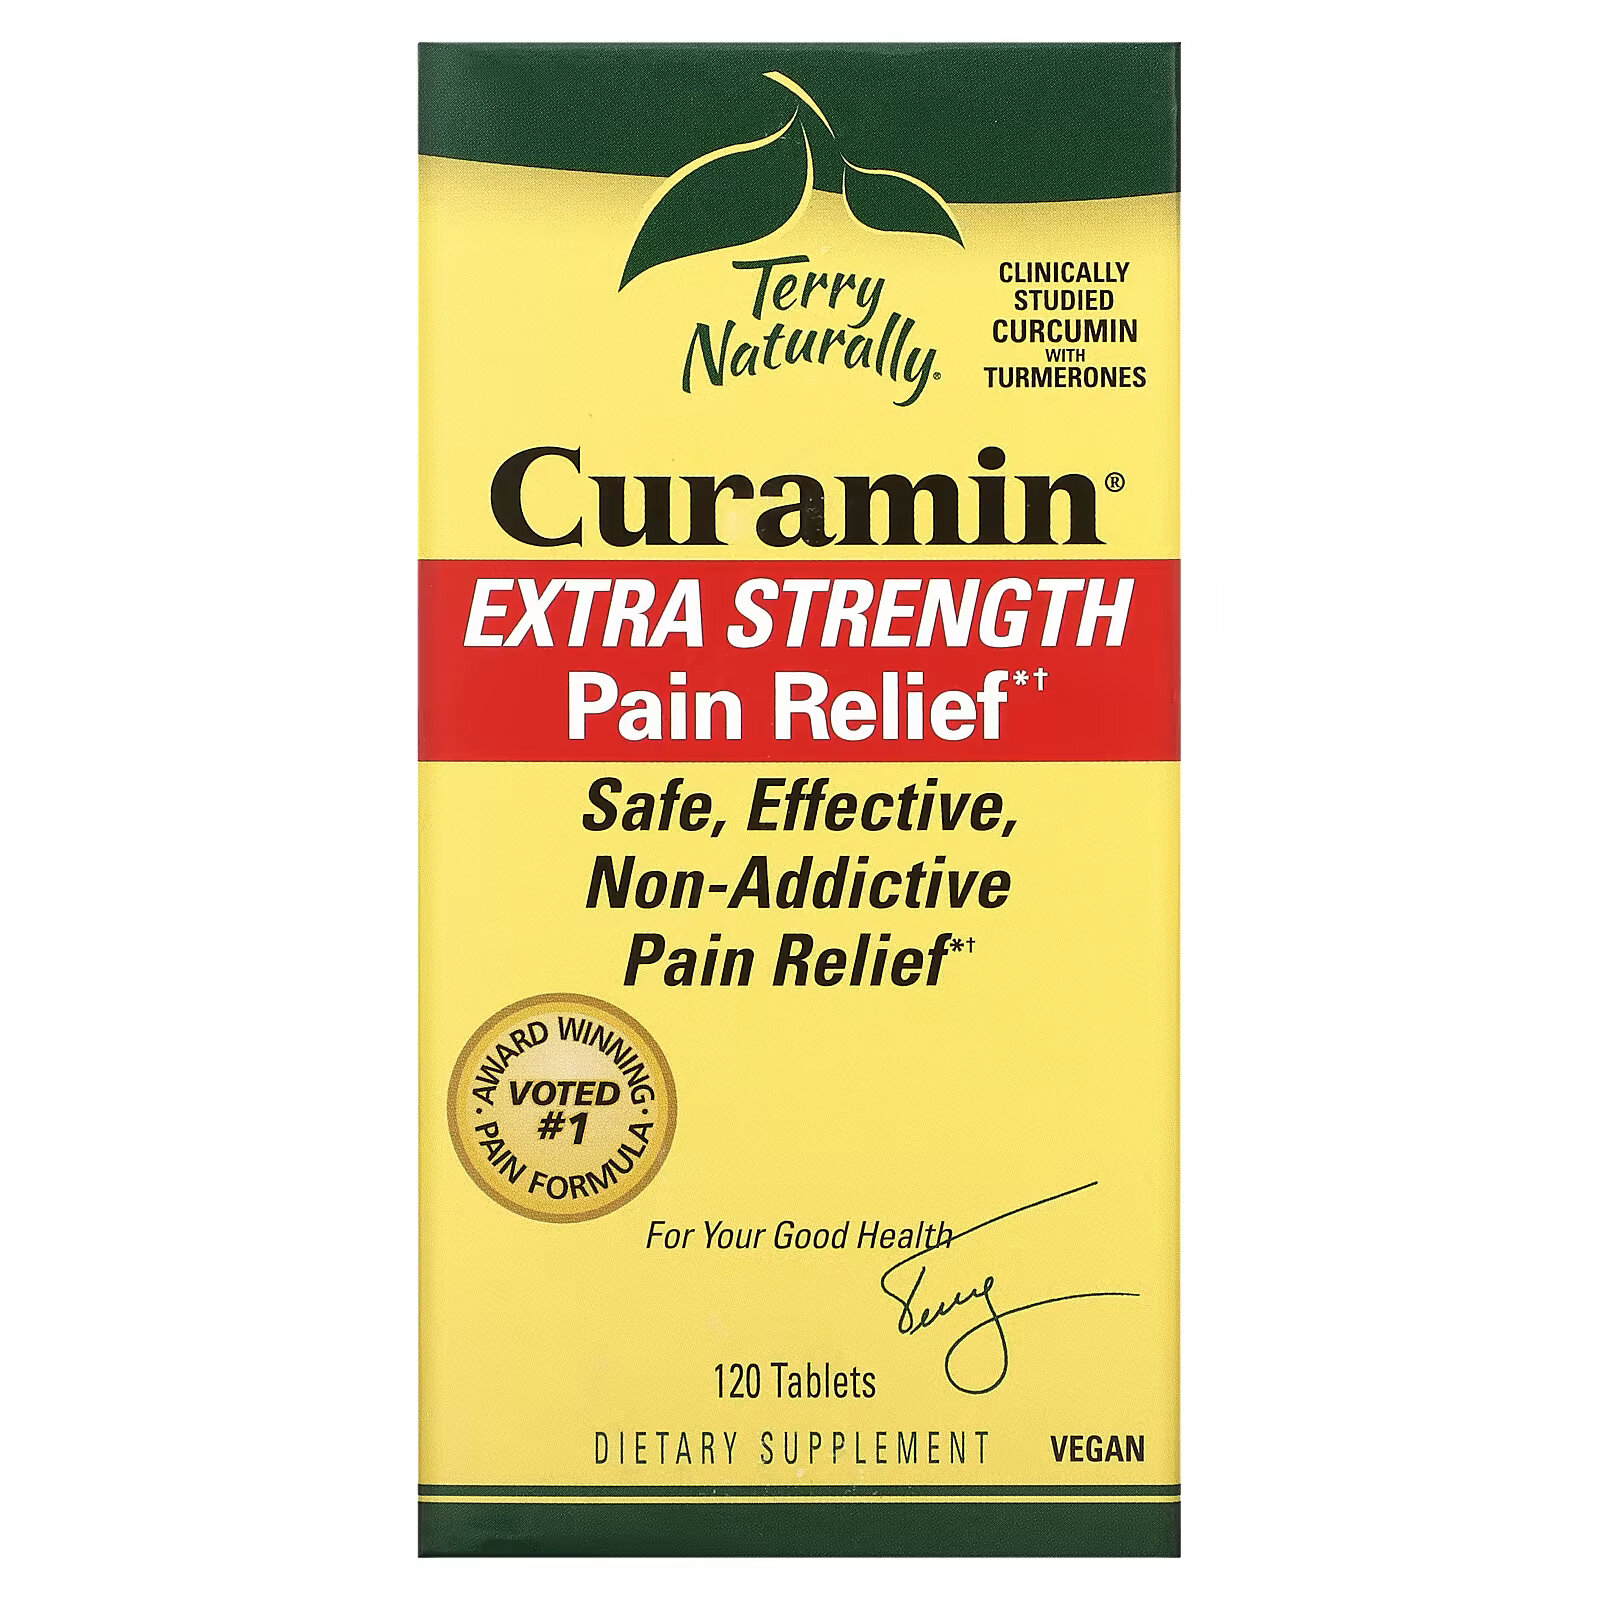 Terry Naturally, Curamin, очень сильное обезболивающее, 120 таблеток europharma terry naturally curamin 120 капсул